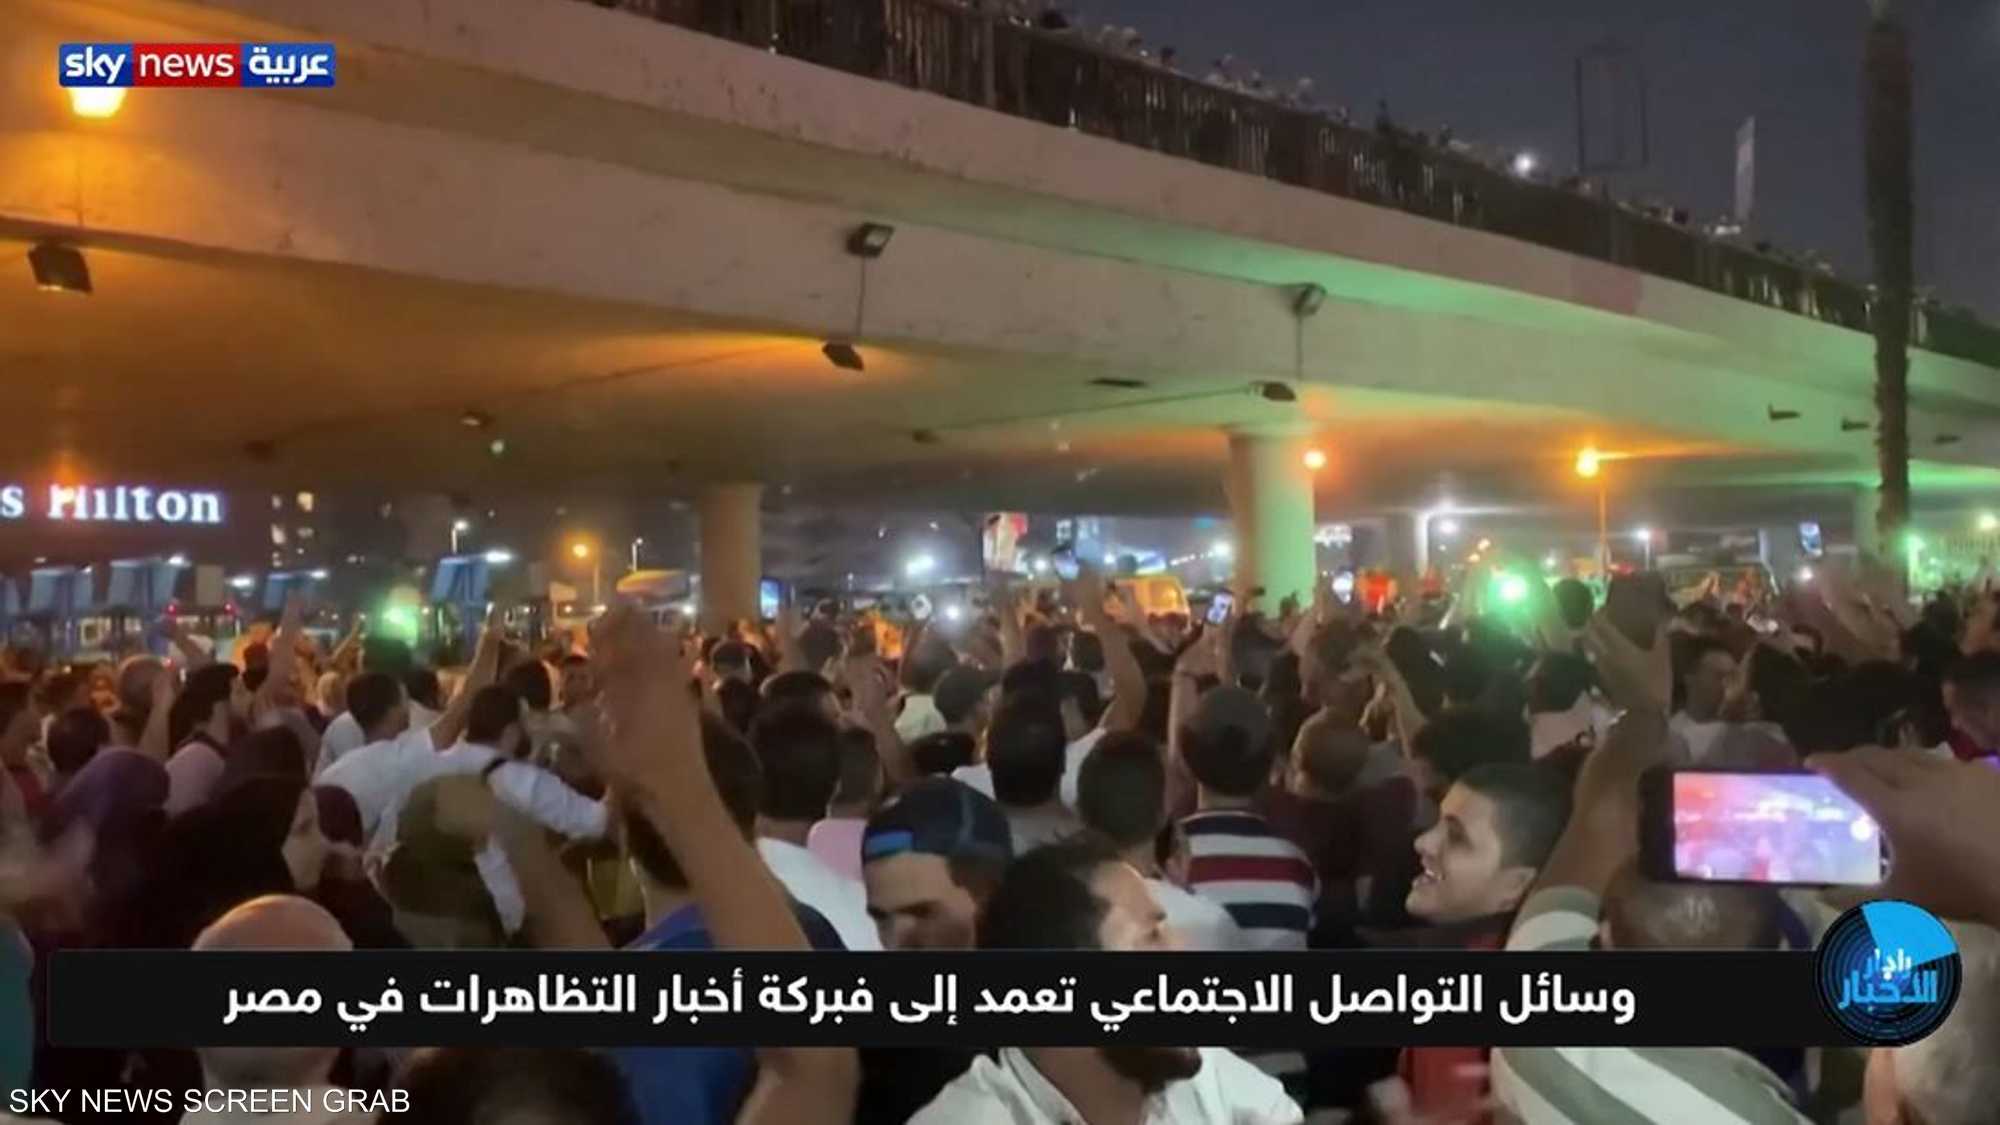 وسائل التواصل الاجتماعي تعمد إلى فبركة أخبار التظاهرات في مص